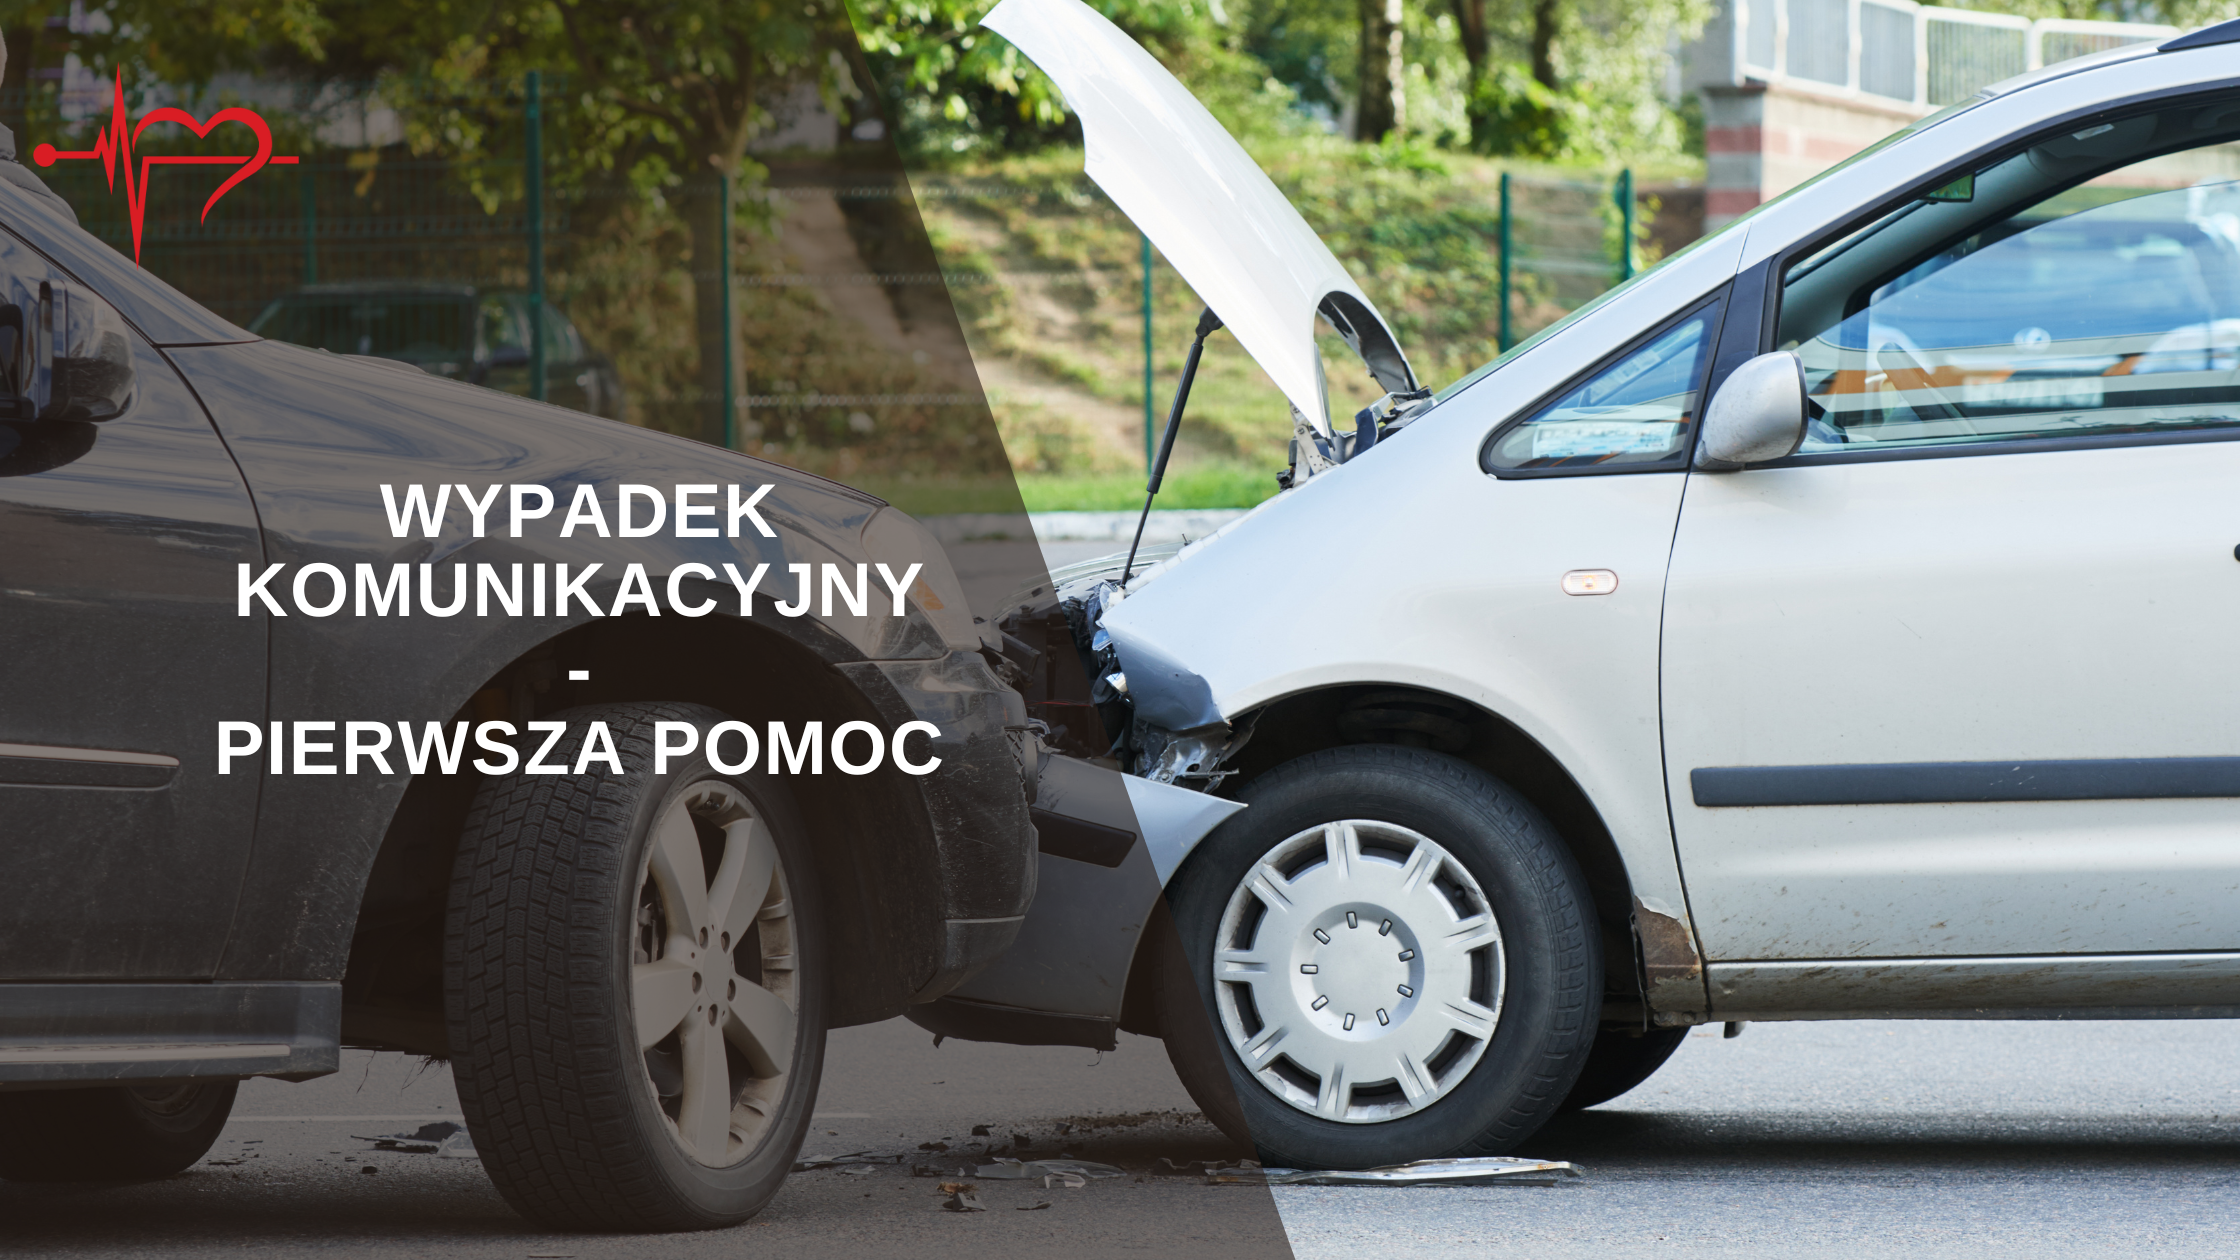 Read more about the article Wypadek Komunikacyjny- Pierwsza Pomoc